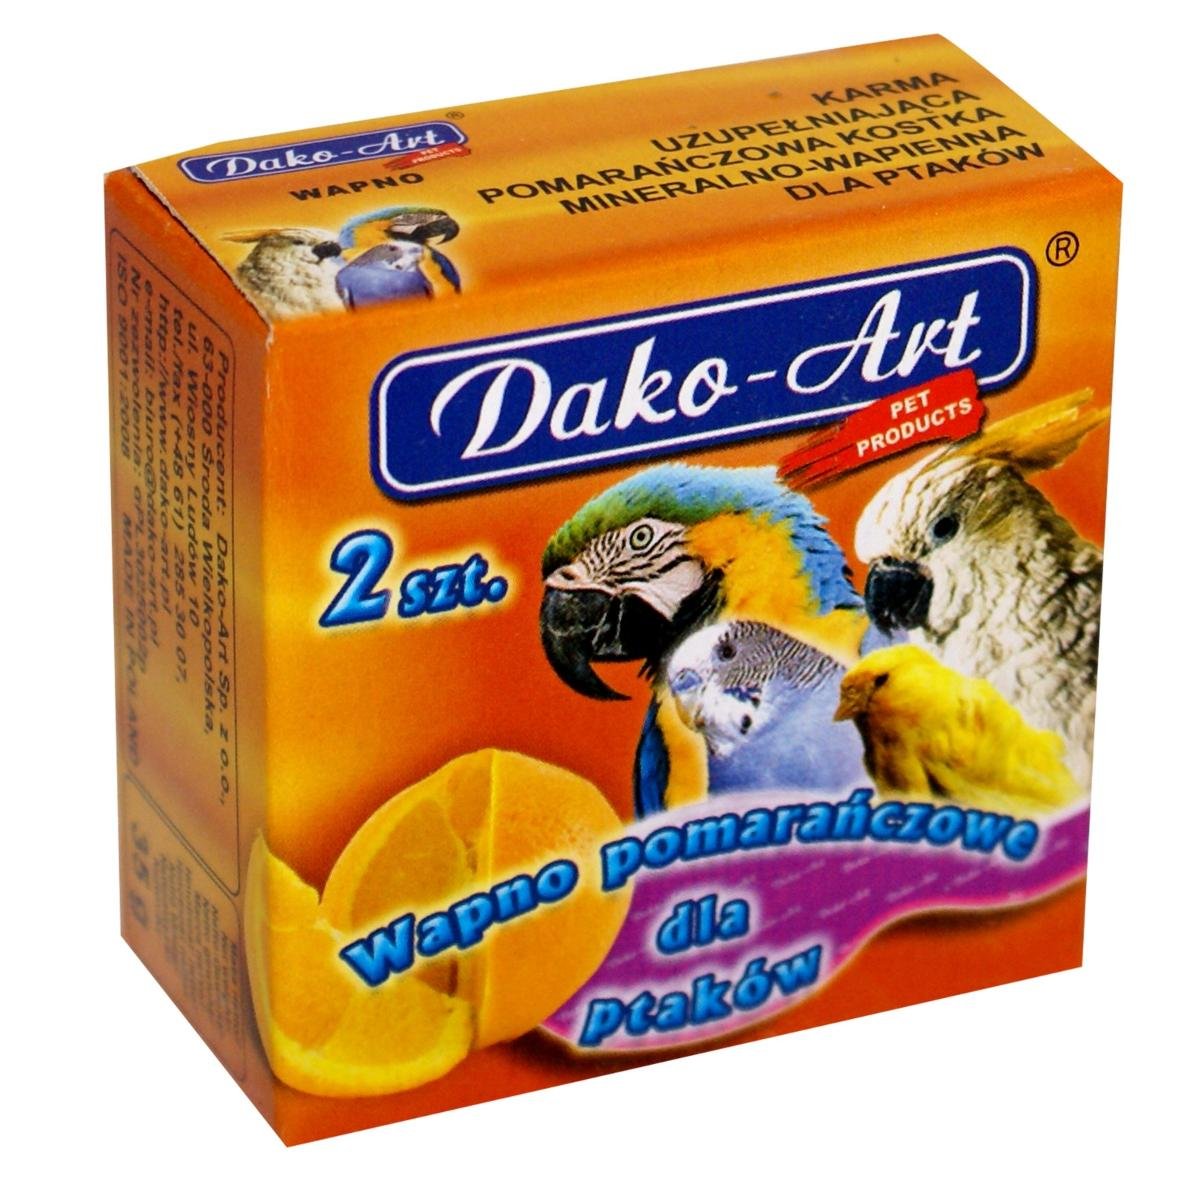 Dako-Art Wapno pomarańczowe dla ptaków 2szt